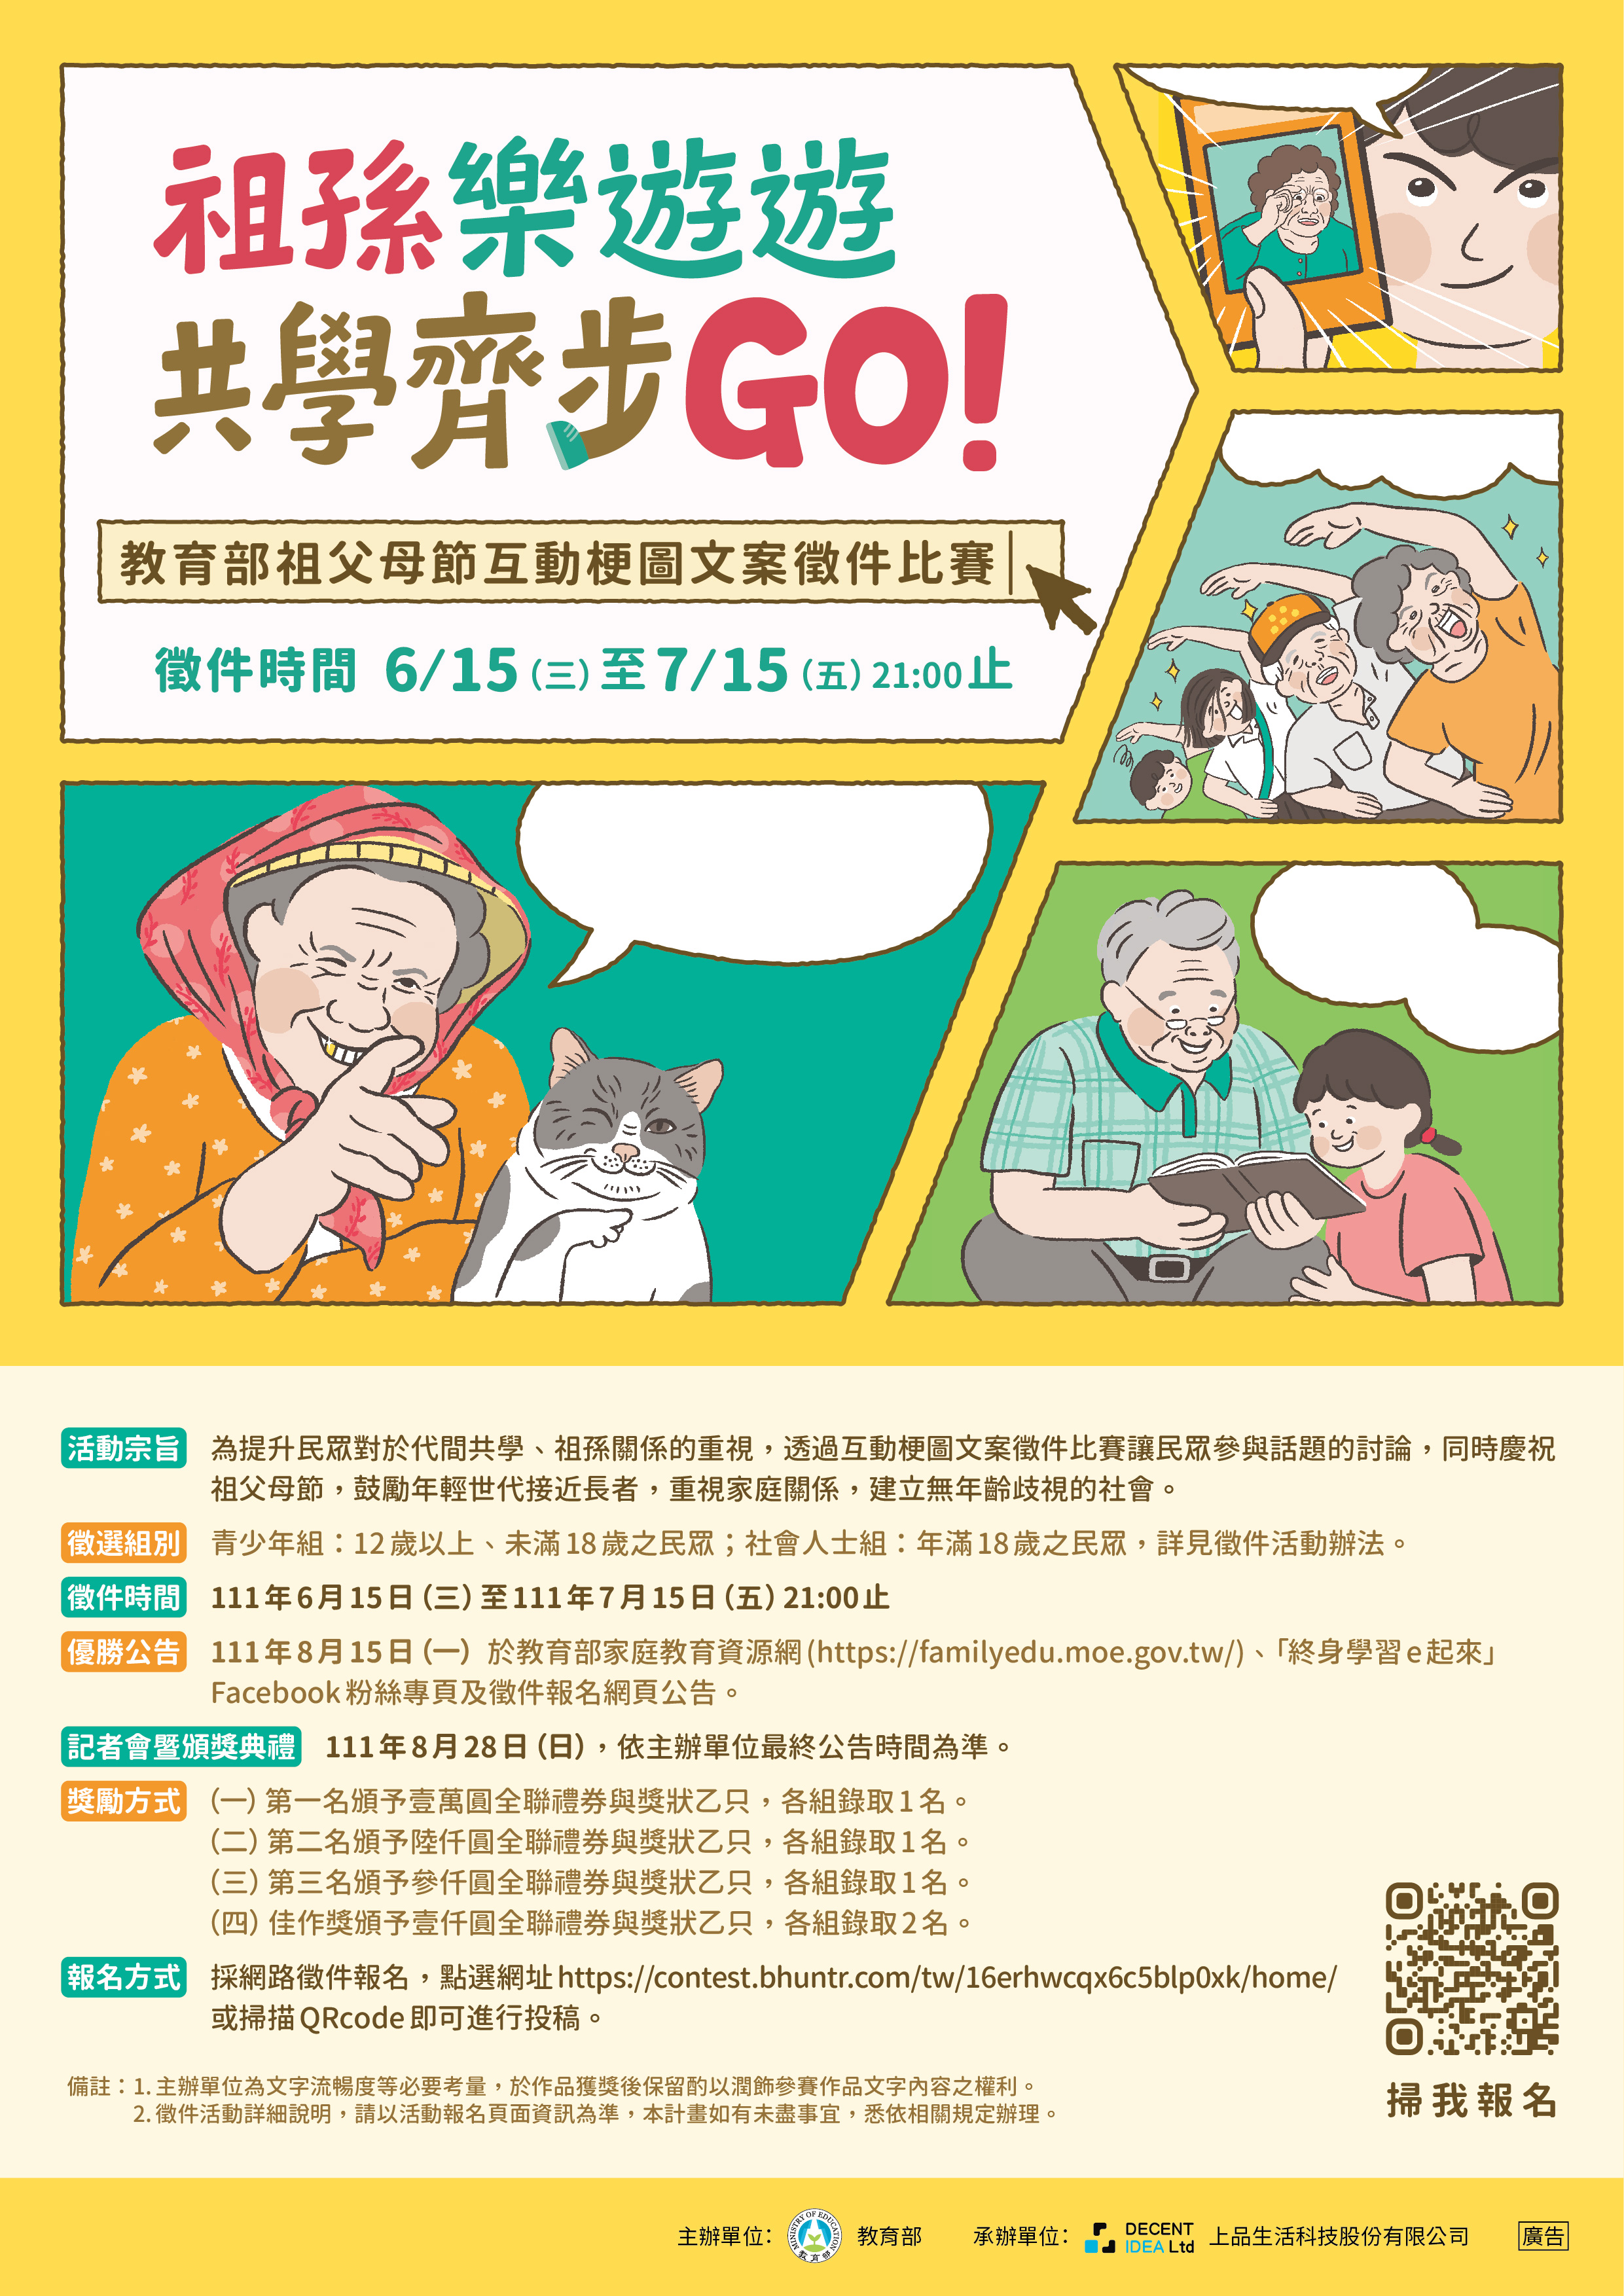 「祖孫樂遊遊，共學齊步GO！」互動梗圖文案徵件比賽即日起受理報名